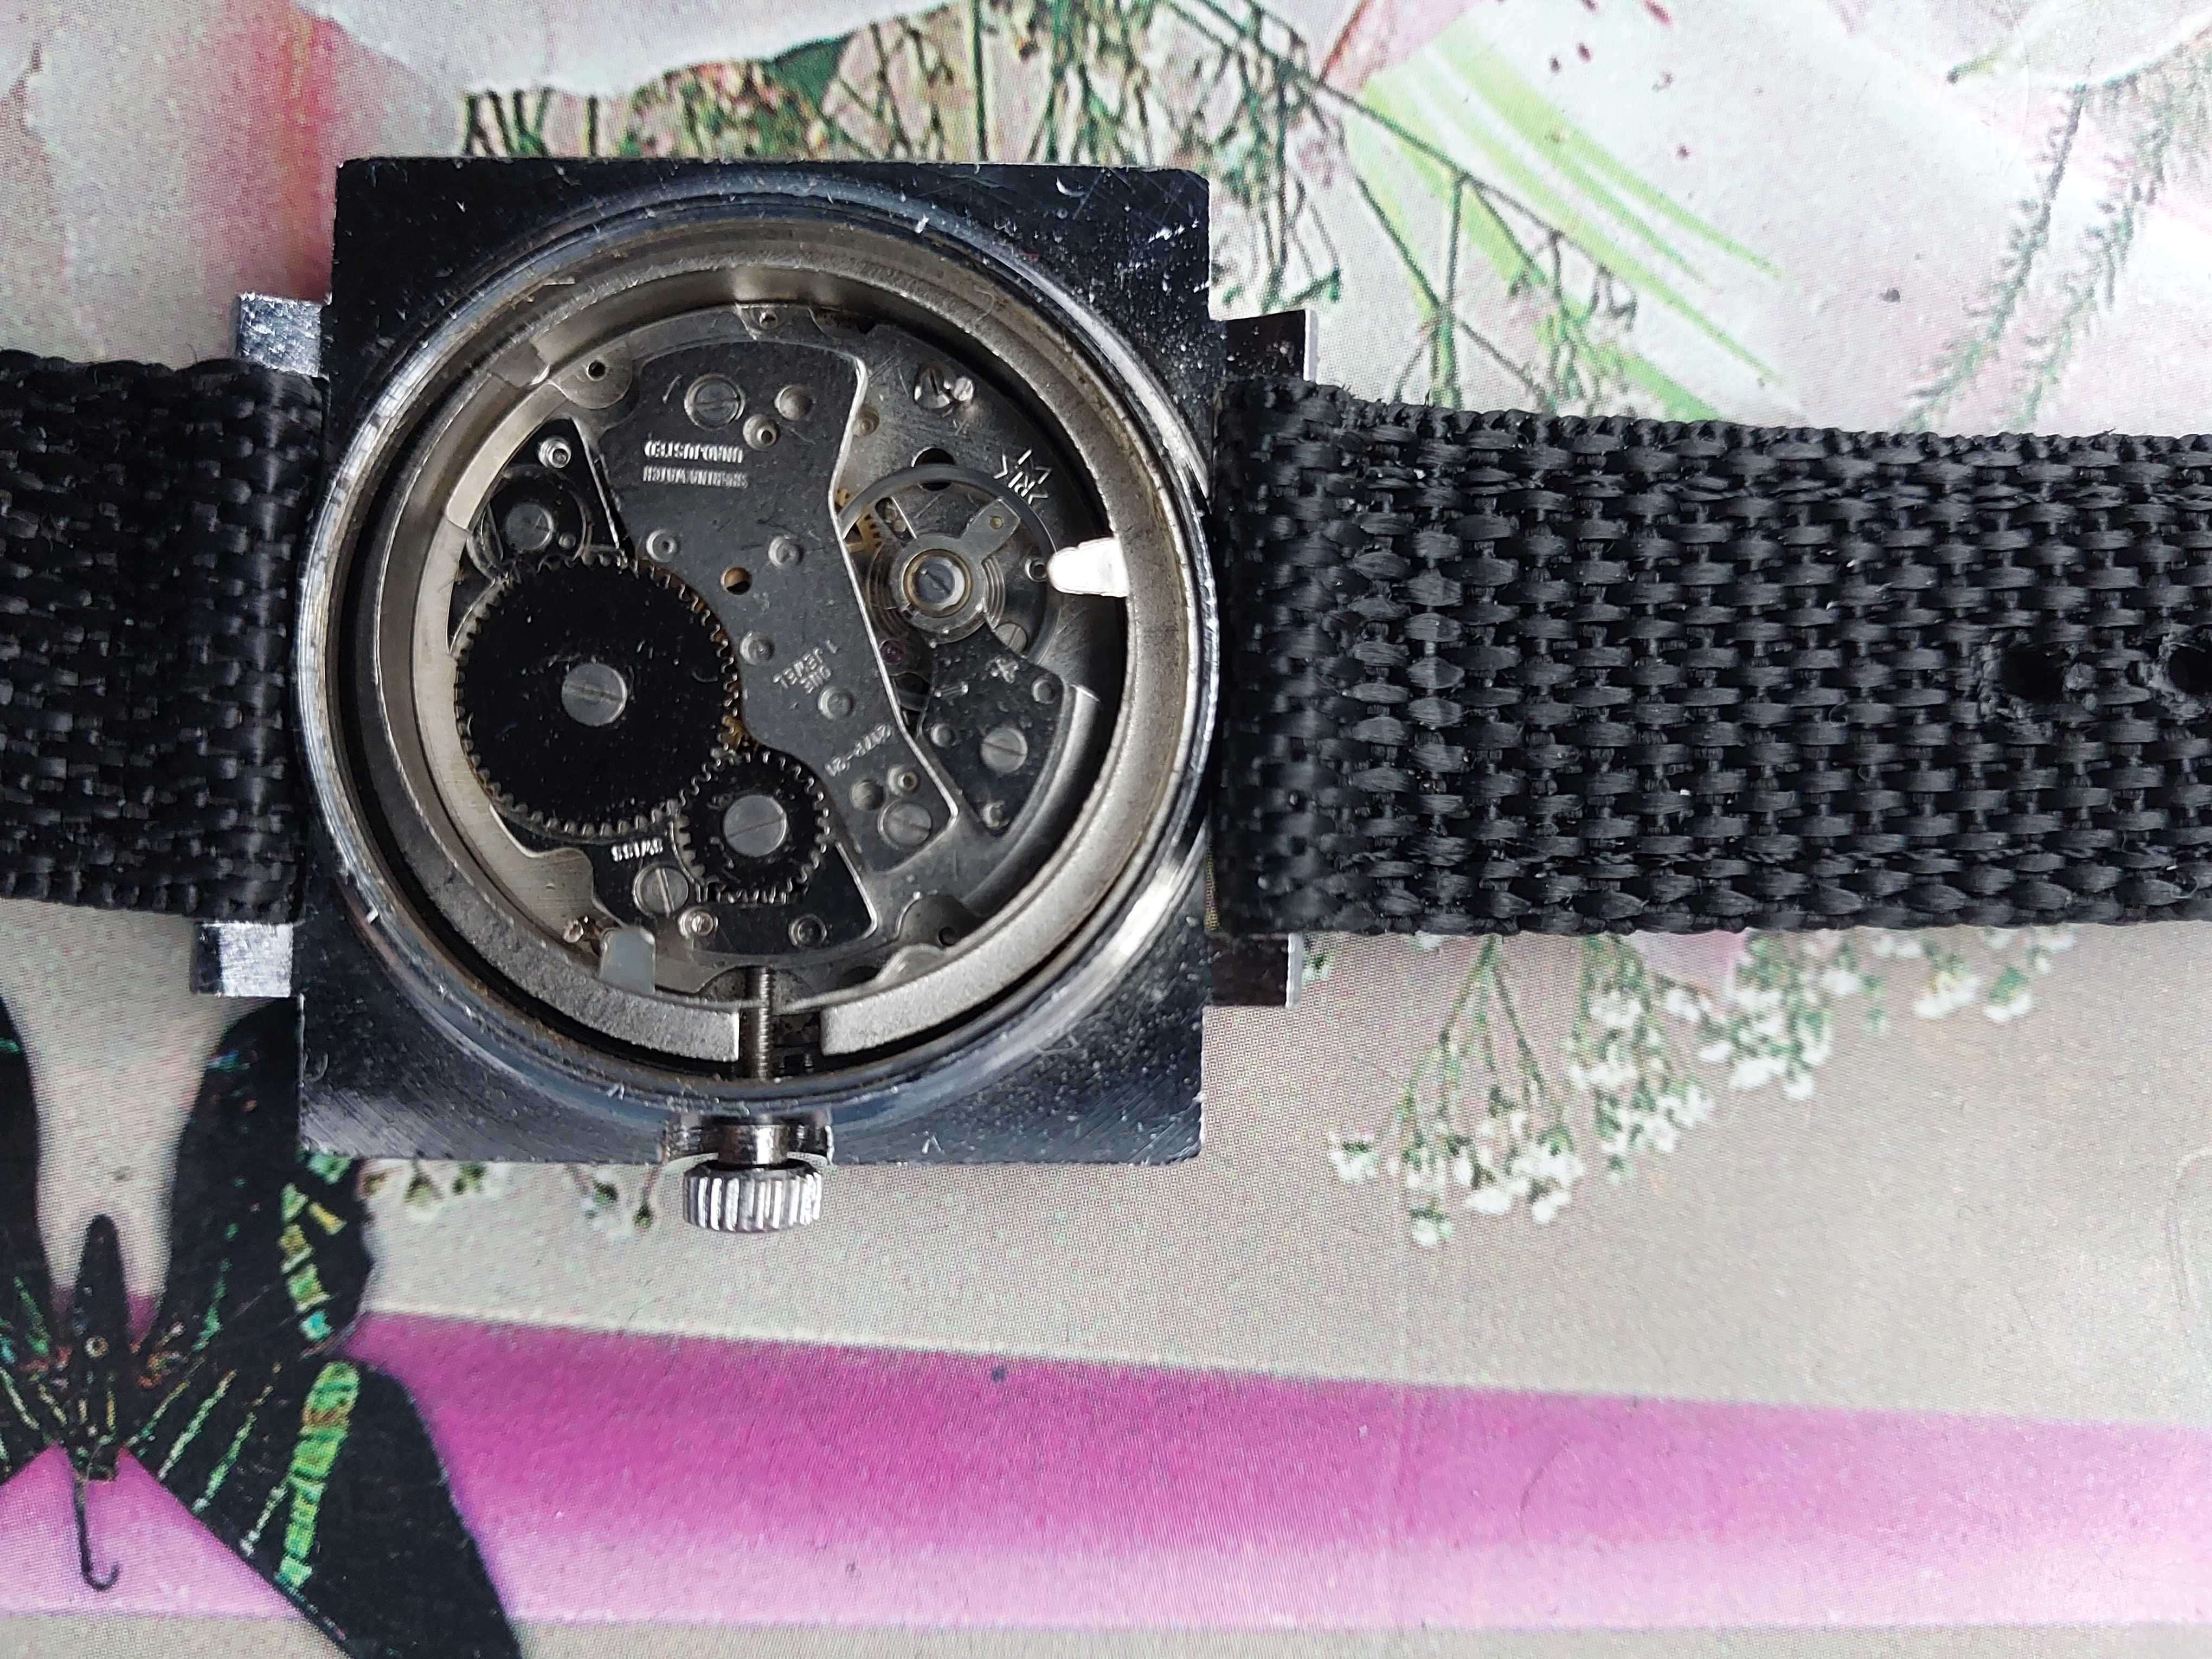 Zegarek Homex De Luxe z kalendarzem szer kop bez kor 37-33 mm.